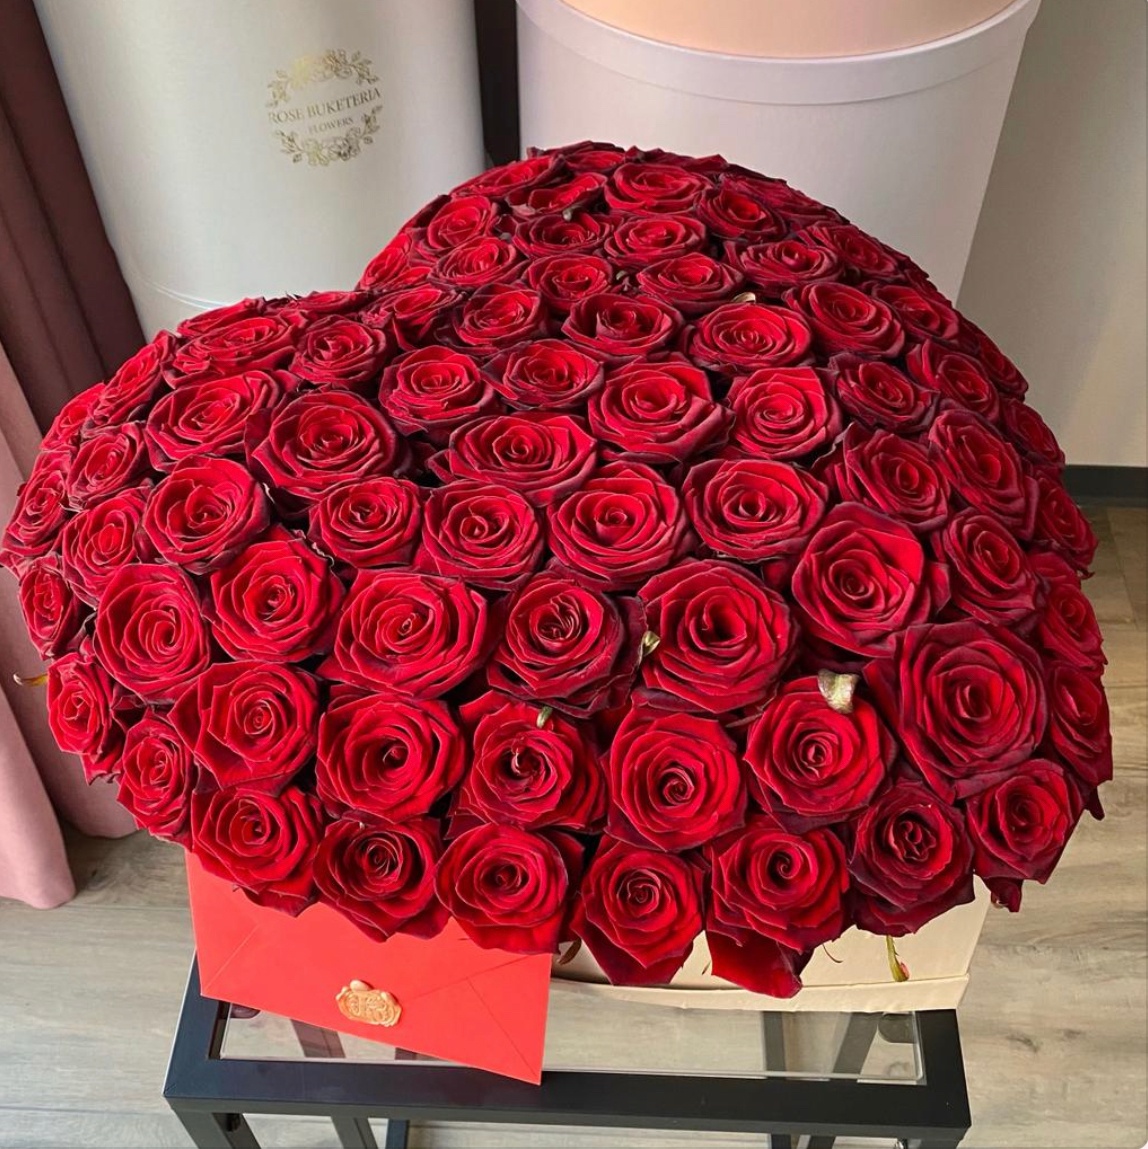 101 Червона троянда в шляпній коробці XL «Сердце»